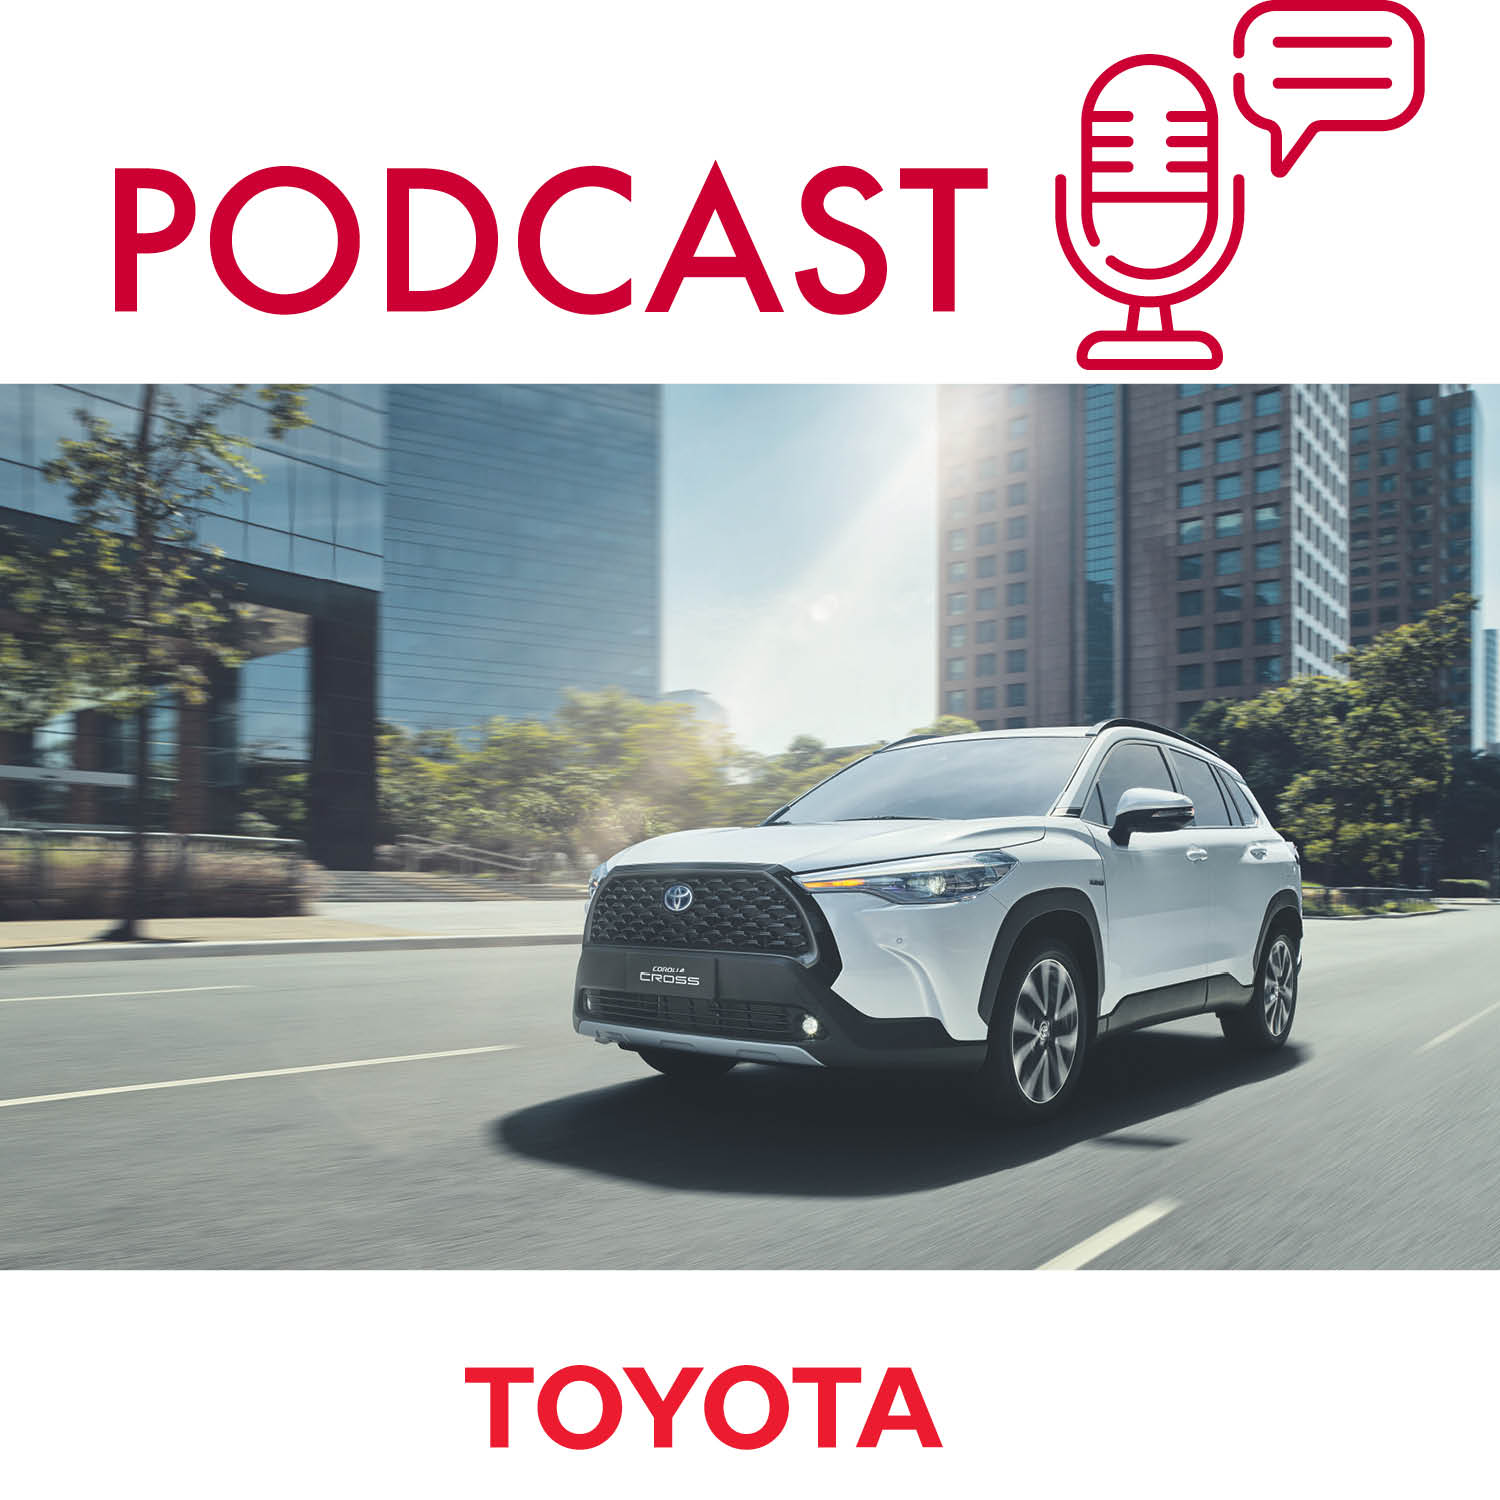 Conteúdo patrocinado: Toyota sobre as soluções de mobilidade